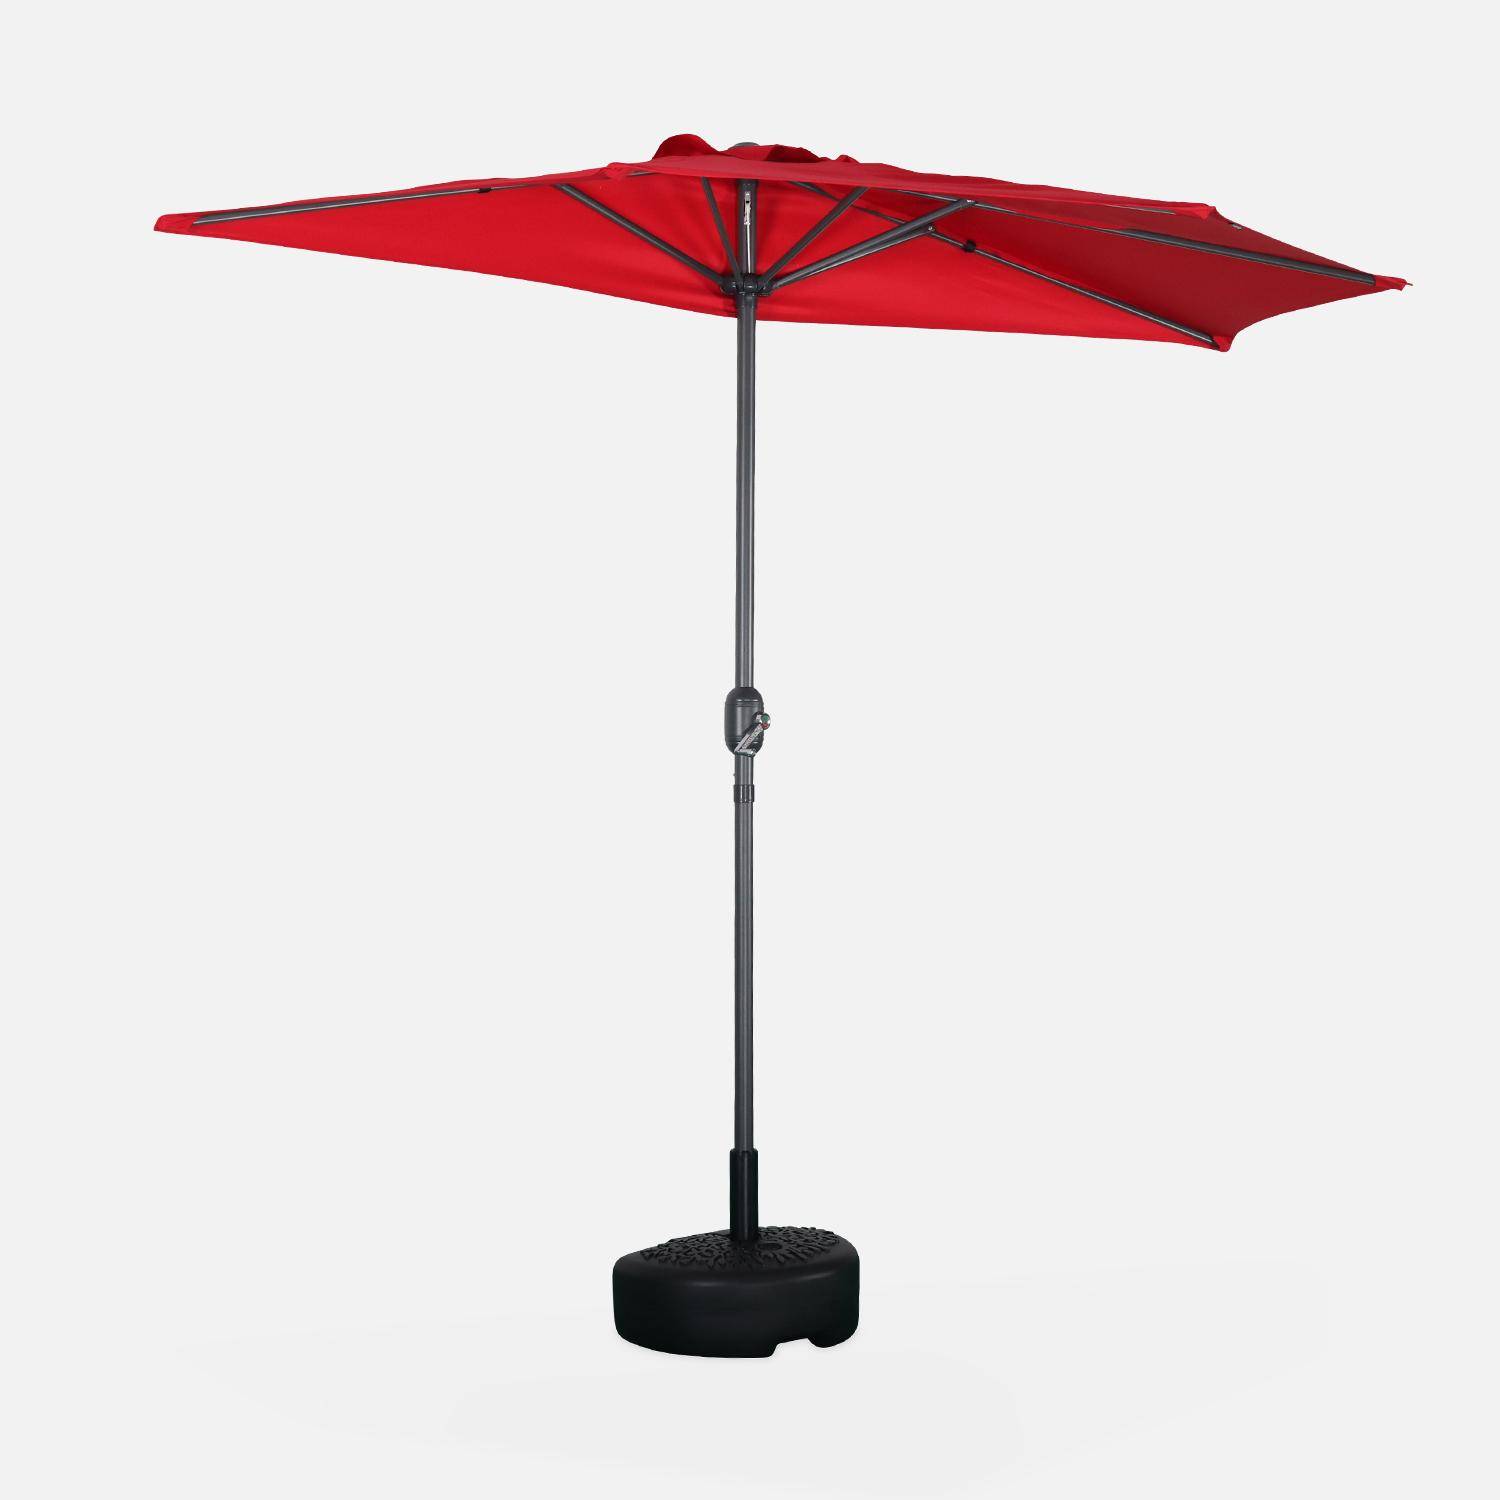  Parasol para balcón Ø250cm  – CALVI – Pequeño parasol recto, mástil en aluminio con manivela, tela color rojo,sweeek,Photo2